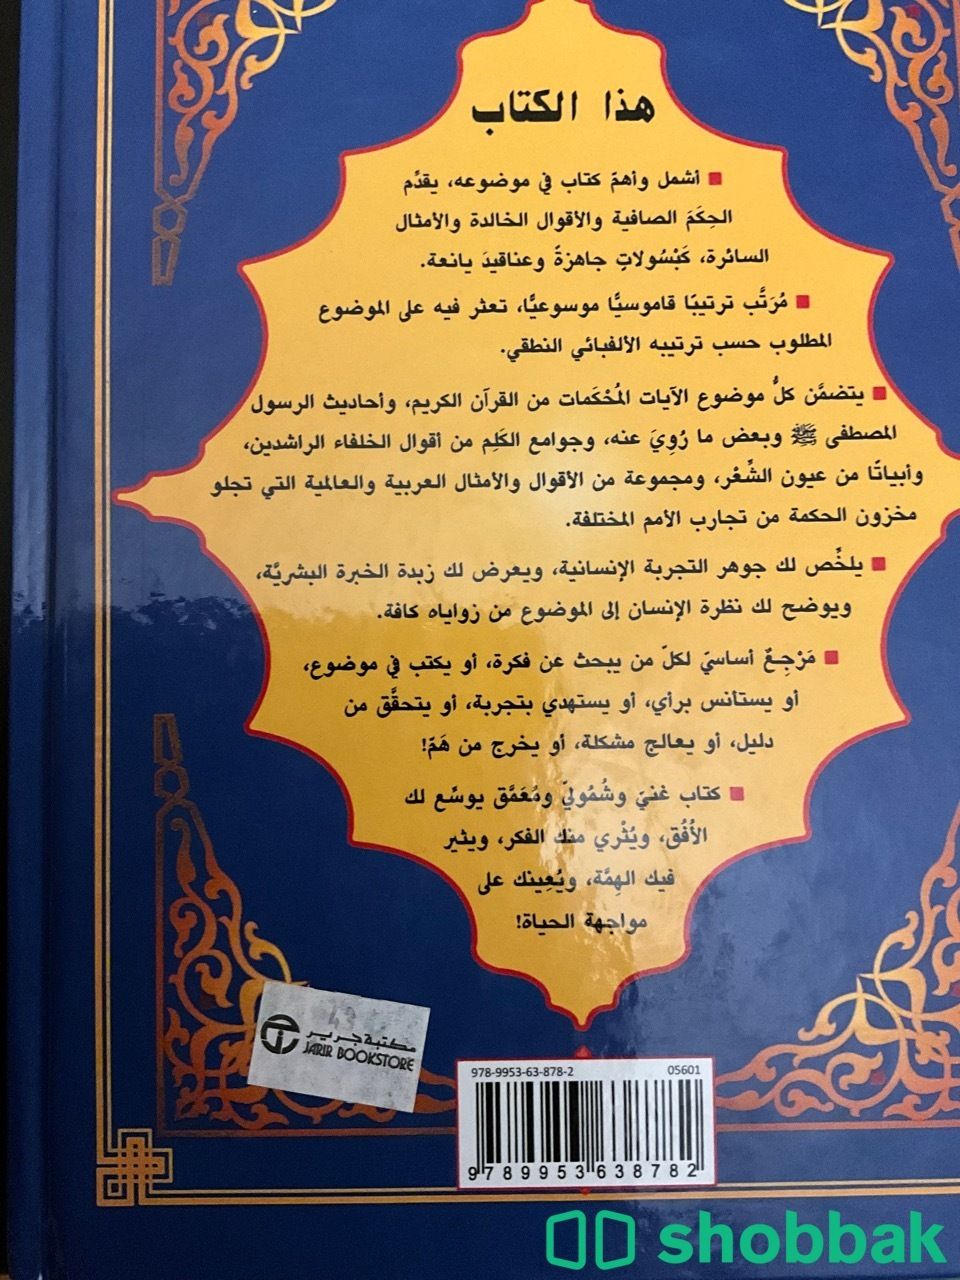 كتاب روائع الحكمة و الأقوال الخالدة Shobbak Saudi Arabia